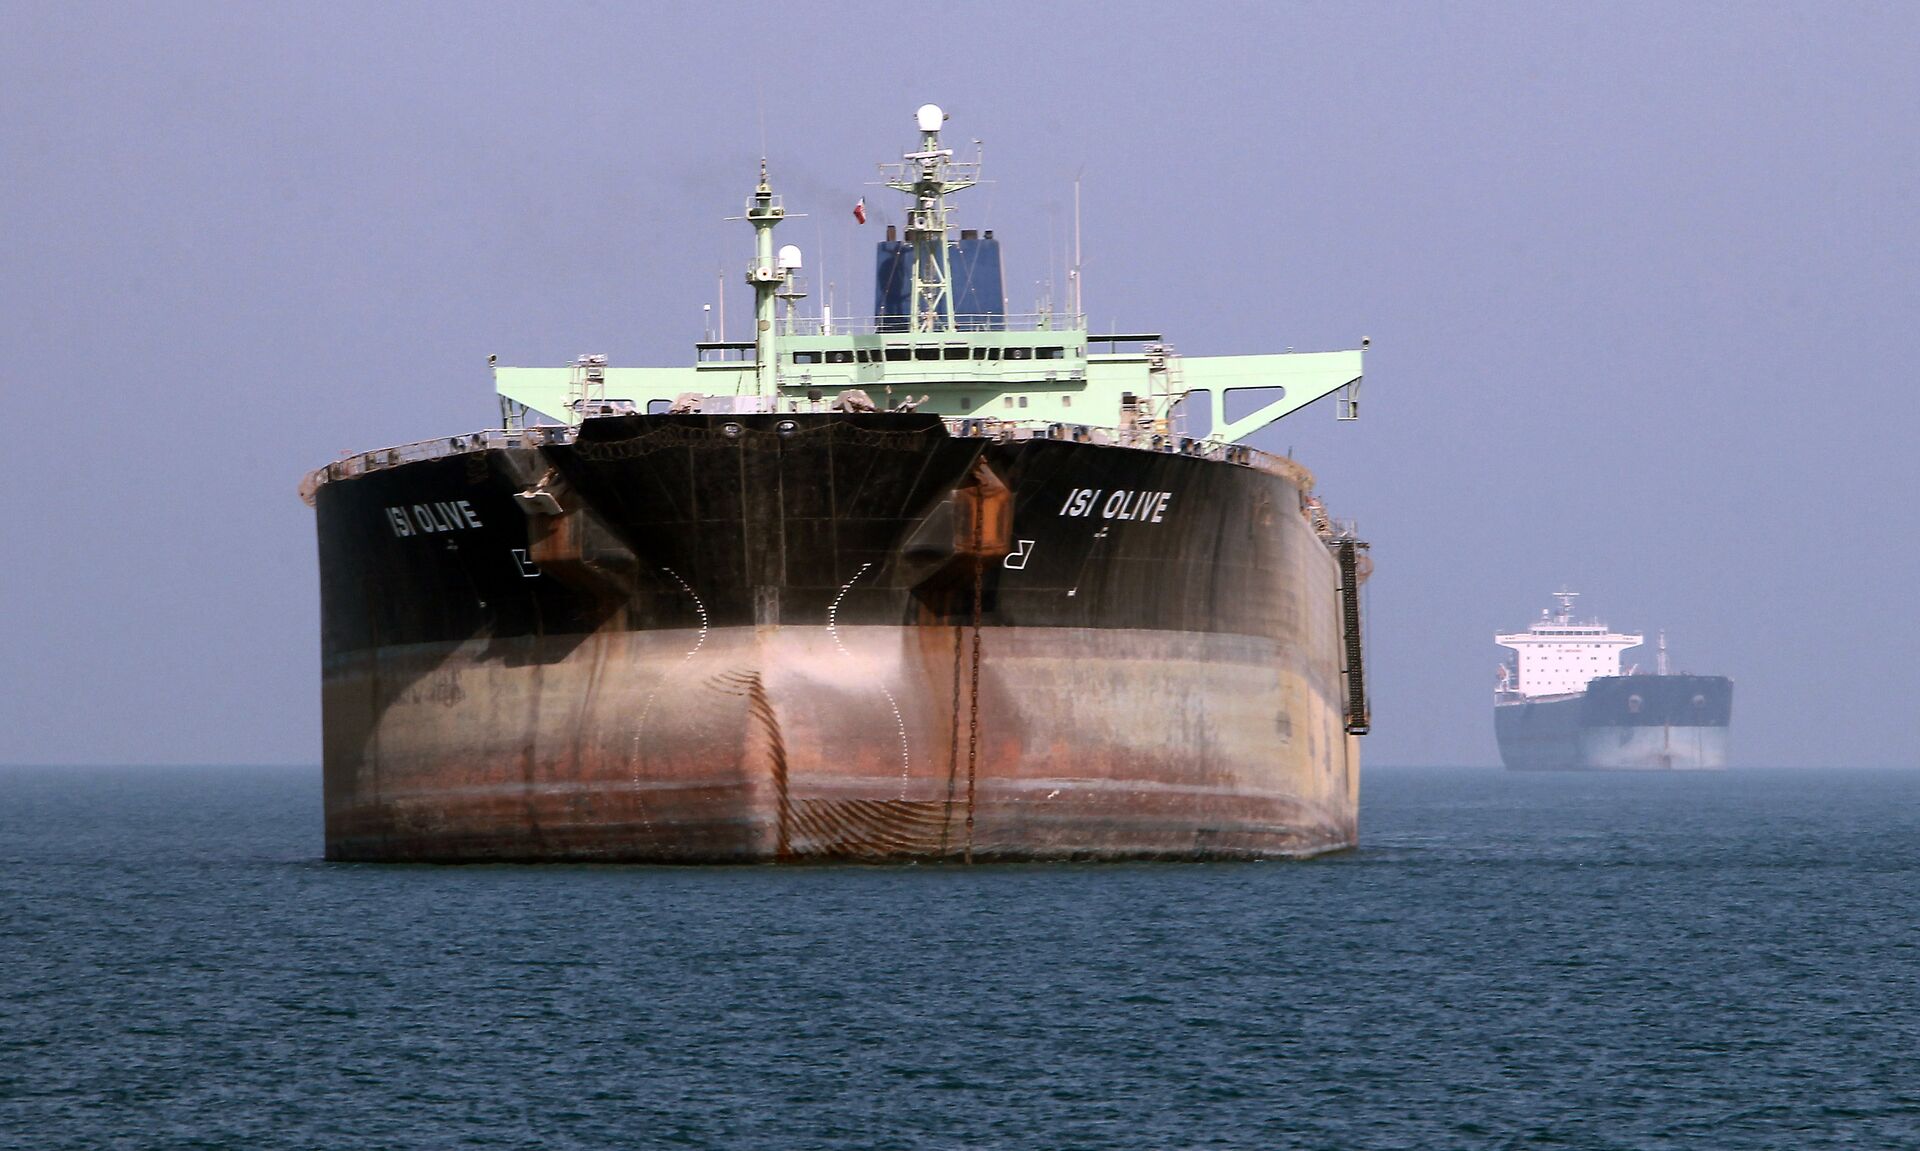 EUA venderam mais de 2 milhões de barris de petróleo bruto do Irã após apreensão de navio, diz mídia - Sputnik Brasil, 1920, 31.05.2021